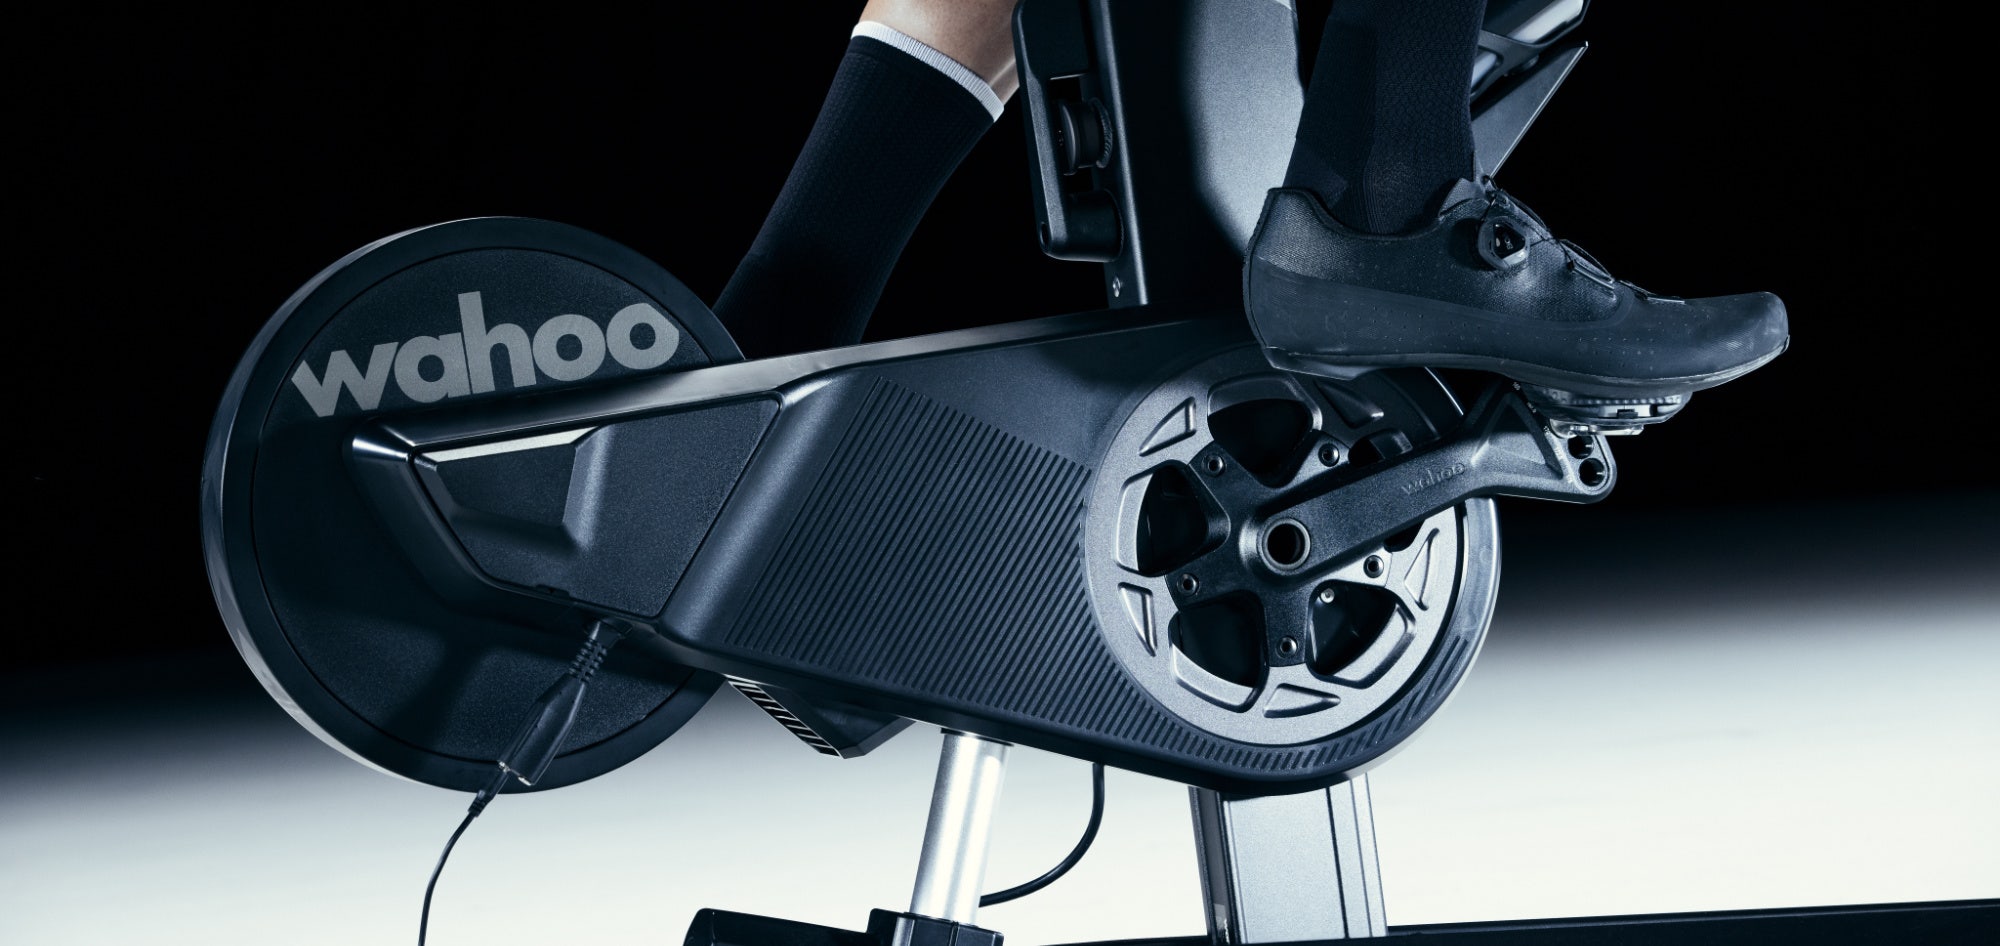 Pura Bici - Con el rodillo inteligente Wahoo KICKR, no importa la bici que  tenga, todas se pueden montar. Bici de ruta de aguja de 130mm? O Mountain  Bike de aguja de